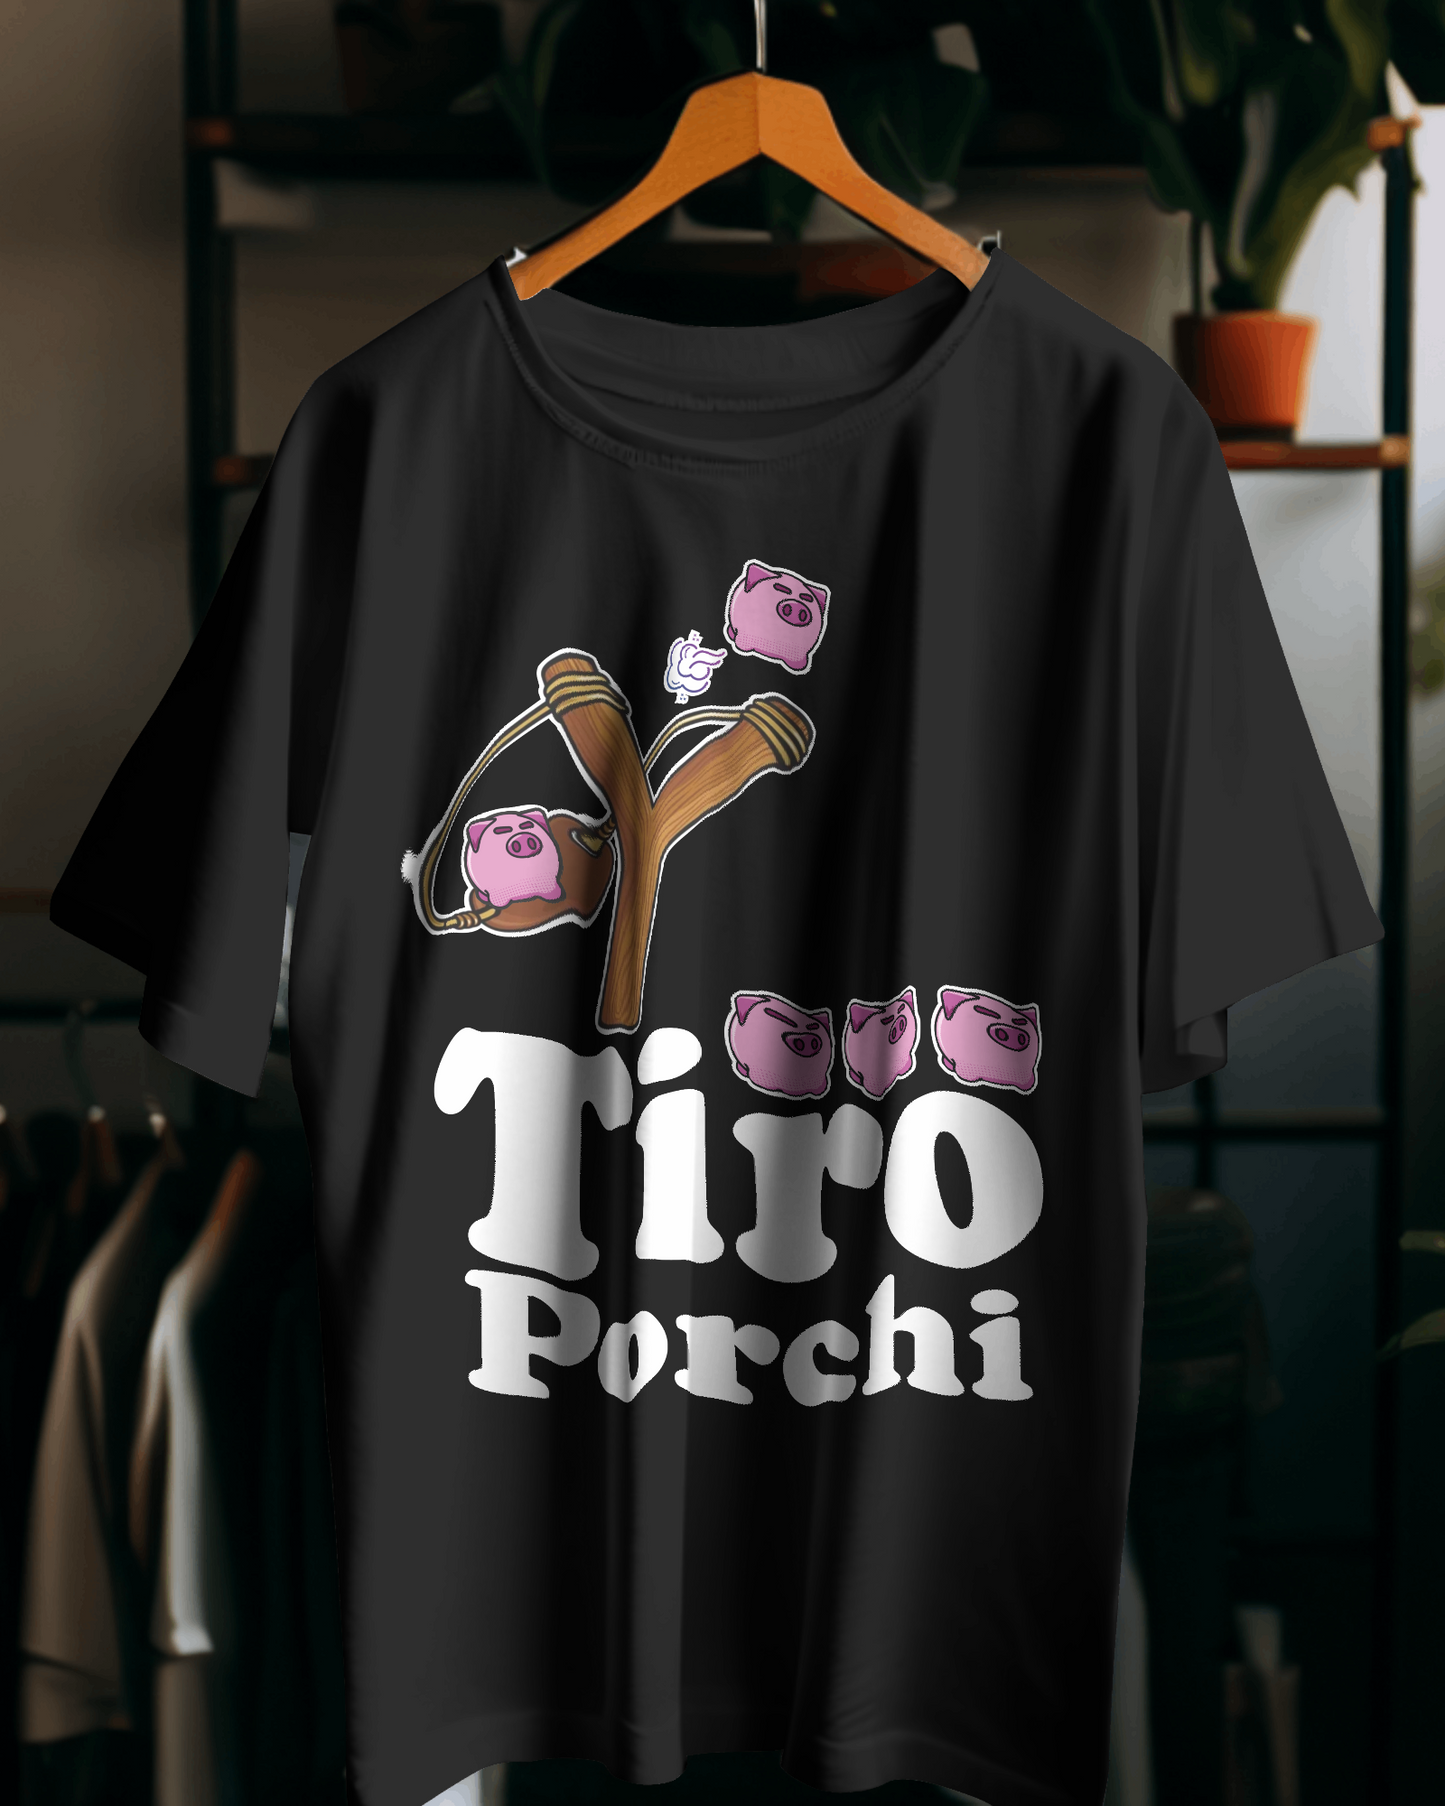 Maglietta unisex 100% cotone organico Tiro porchi